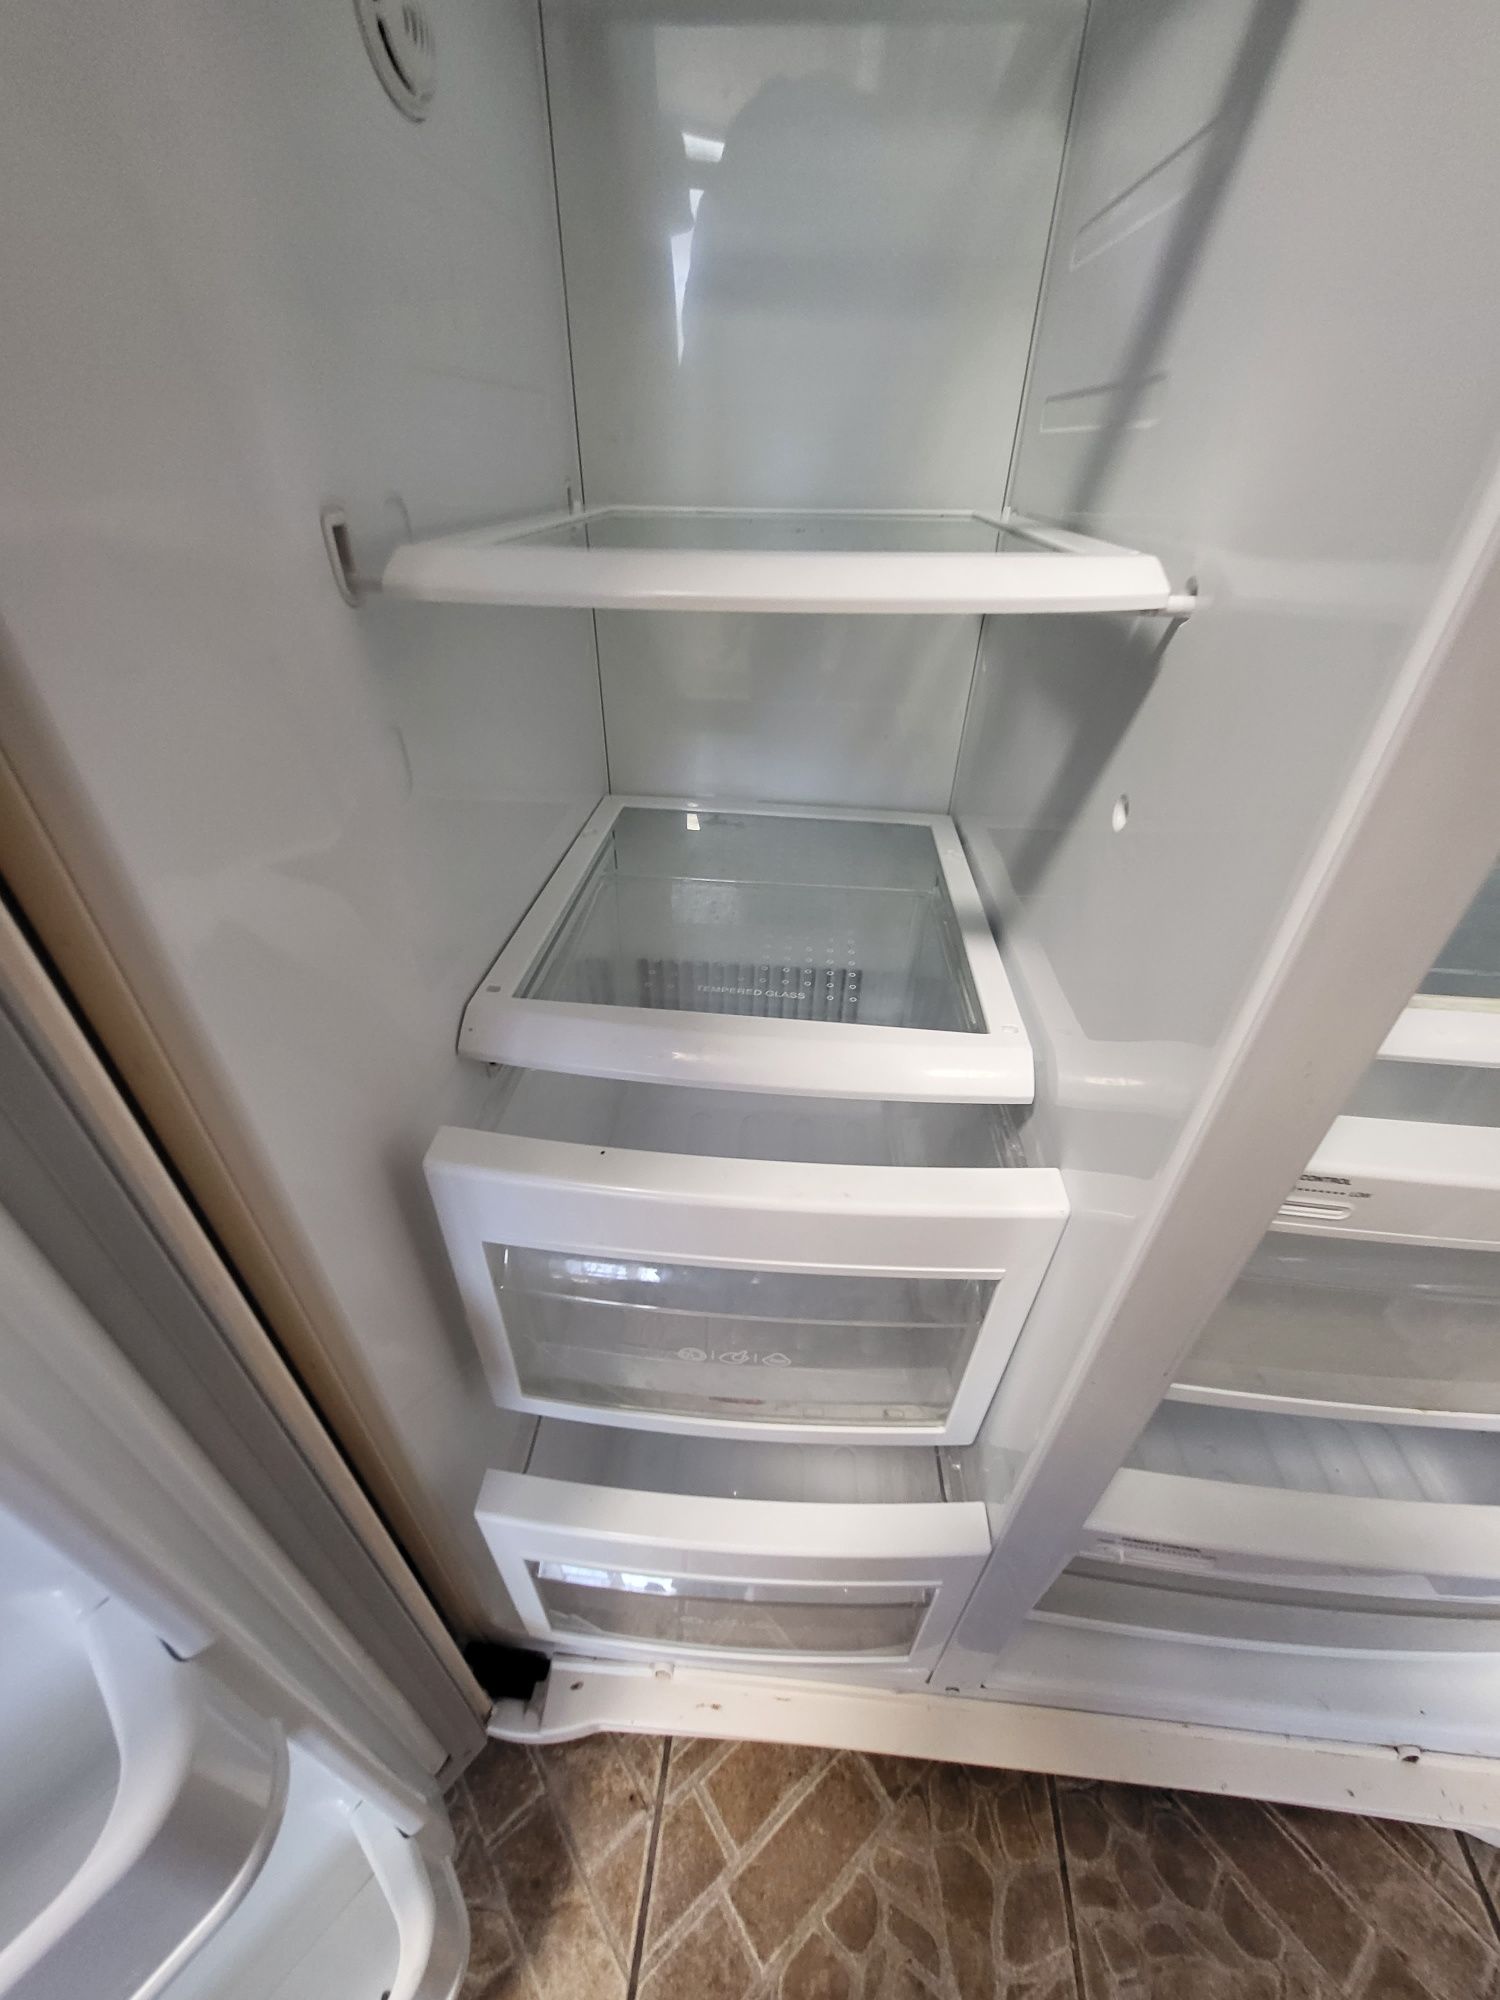 Продам холодильник LG GR-B207WVQA